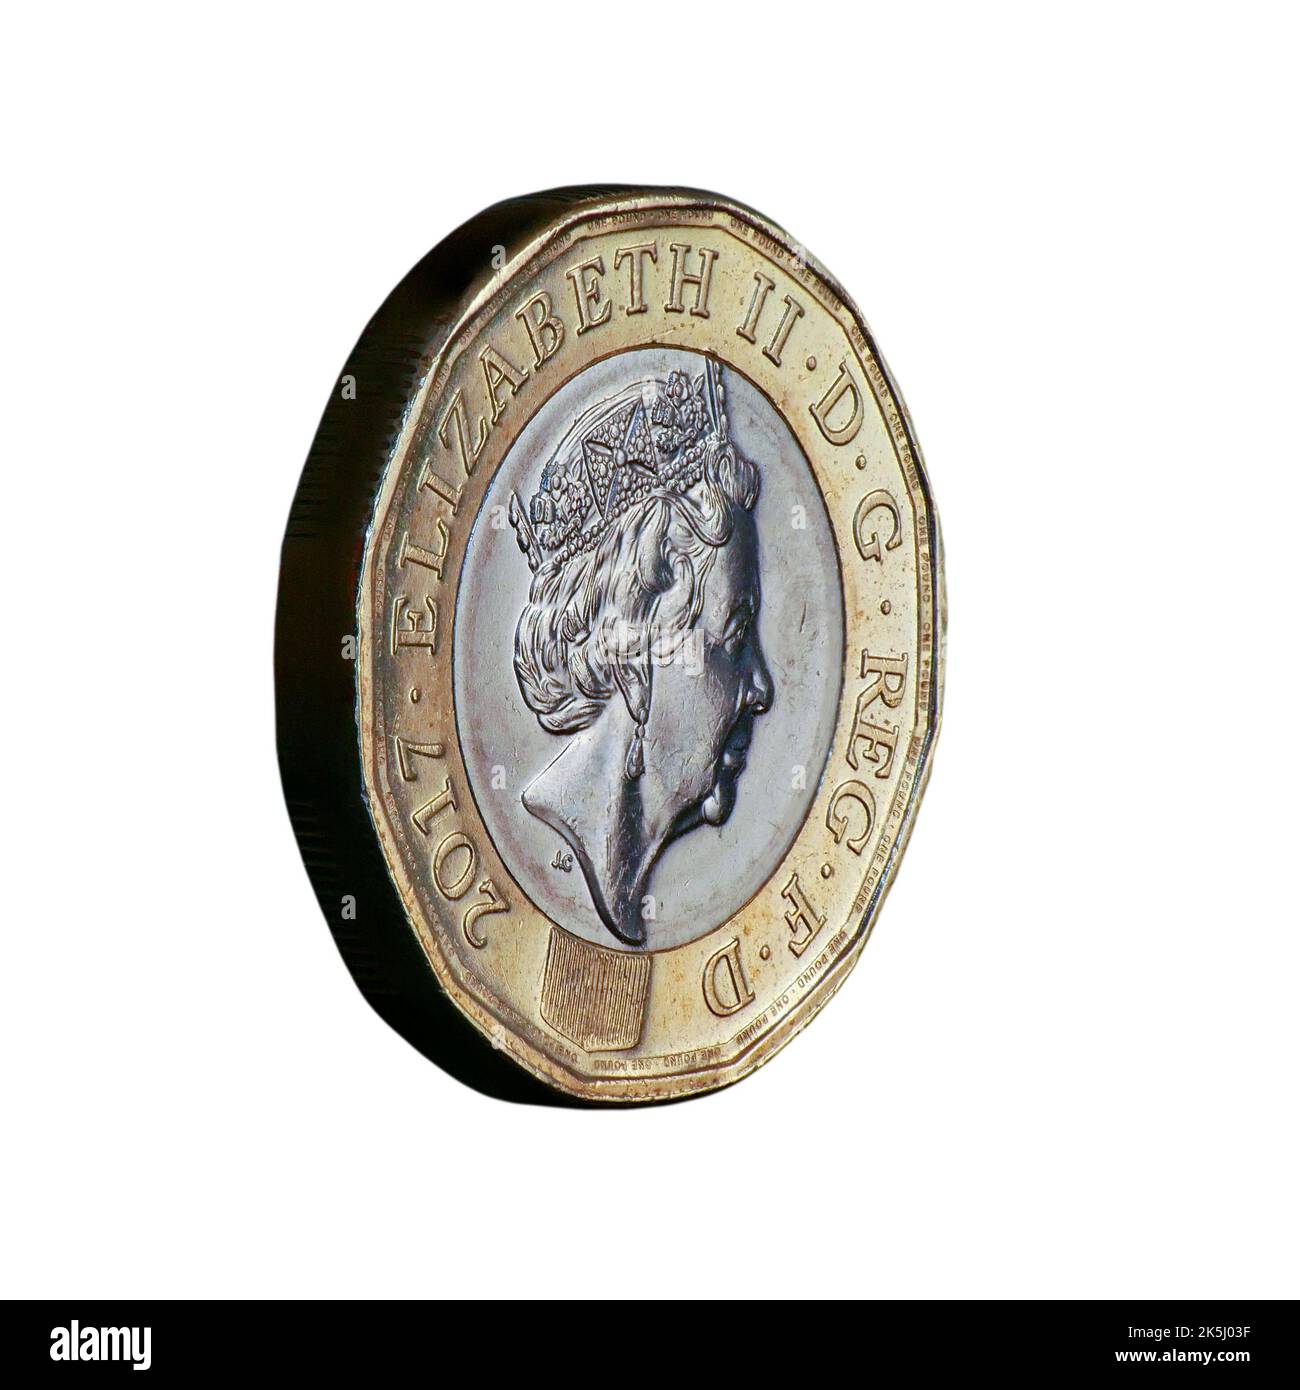 Image macro de gros plan empilée avec mise au point montrant une vue oblique d'une découpe de pièce d'une livre au Royaume-Uni sur un arrière-plan blanc Banque D'Images